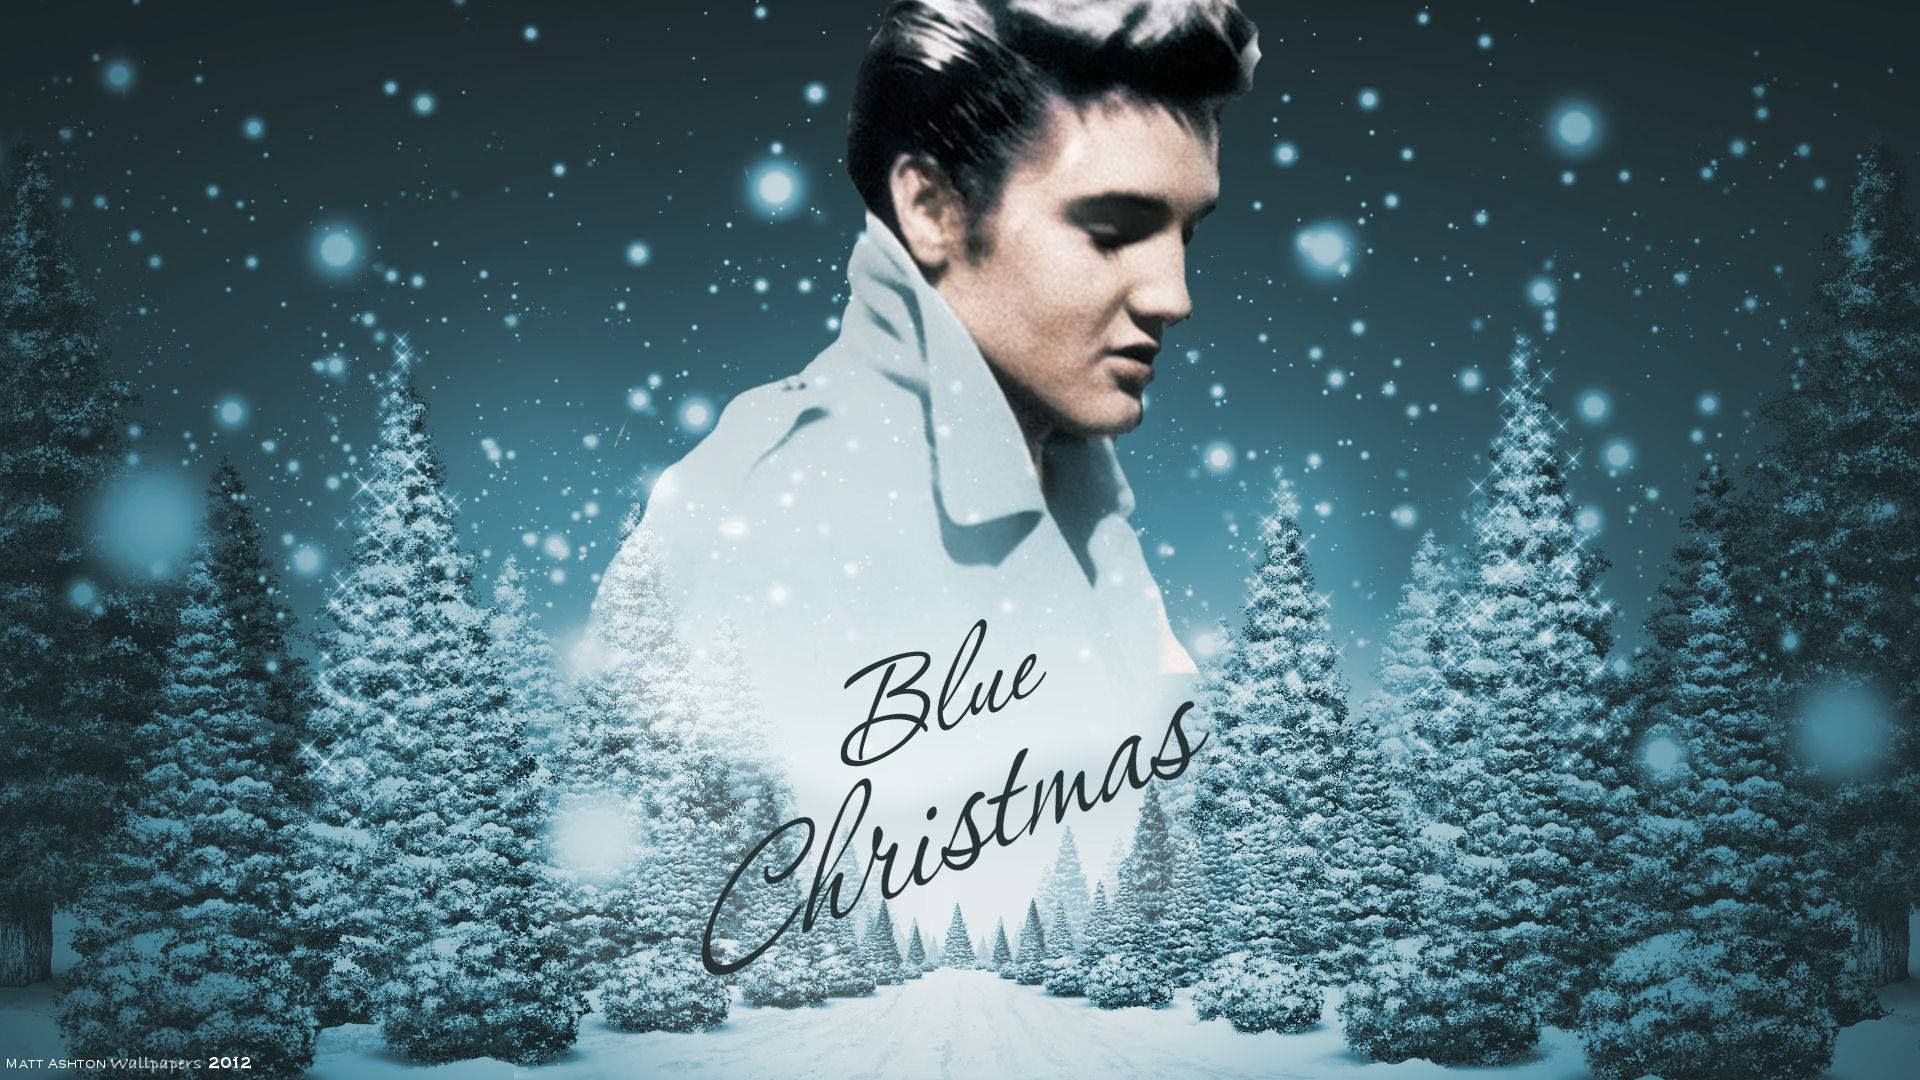 Elvis Presley Christmas. Elvis presley wallpaper, Elvis presley christmas, Elvis